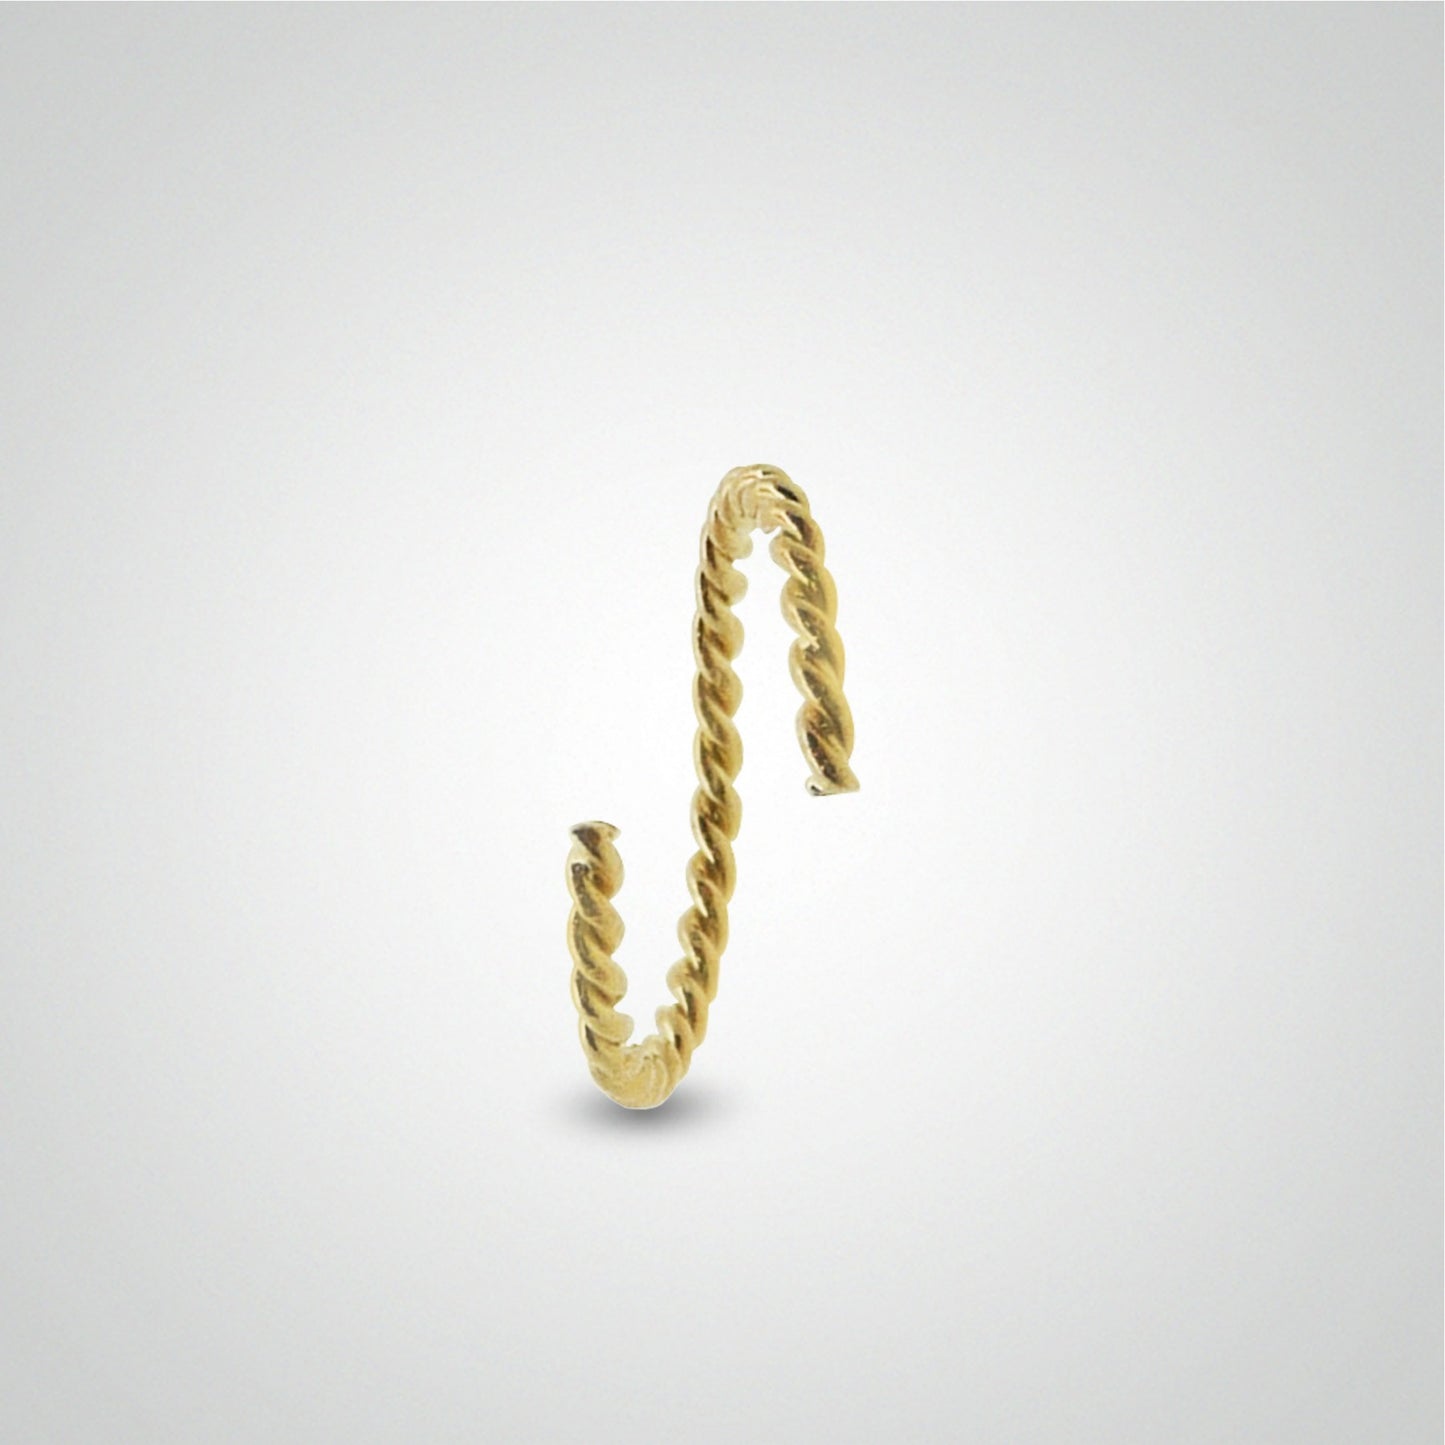 Piercing anti hélix : anneau en or jaune torsadé à écarter